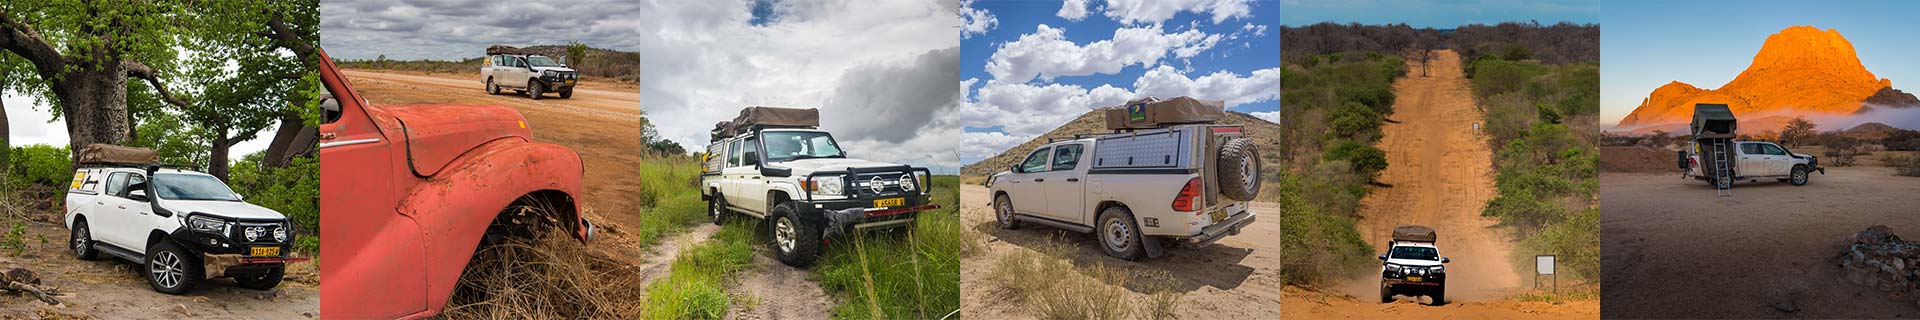 Autohuur-Namibie-4x4-Off-Road-voertuigen-max-5-personen-photo-footer